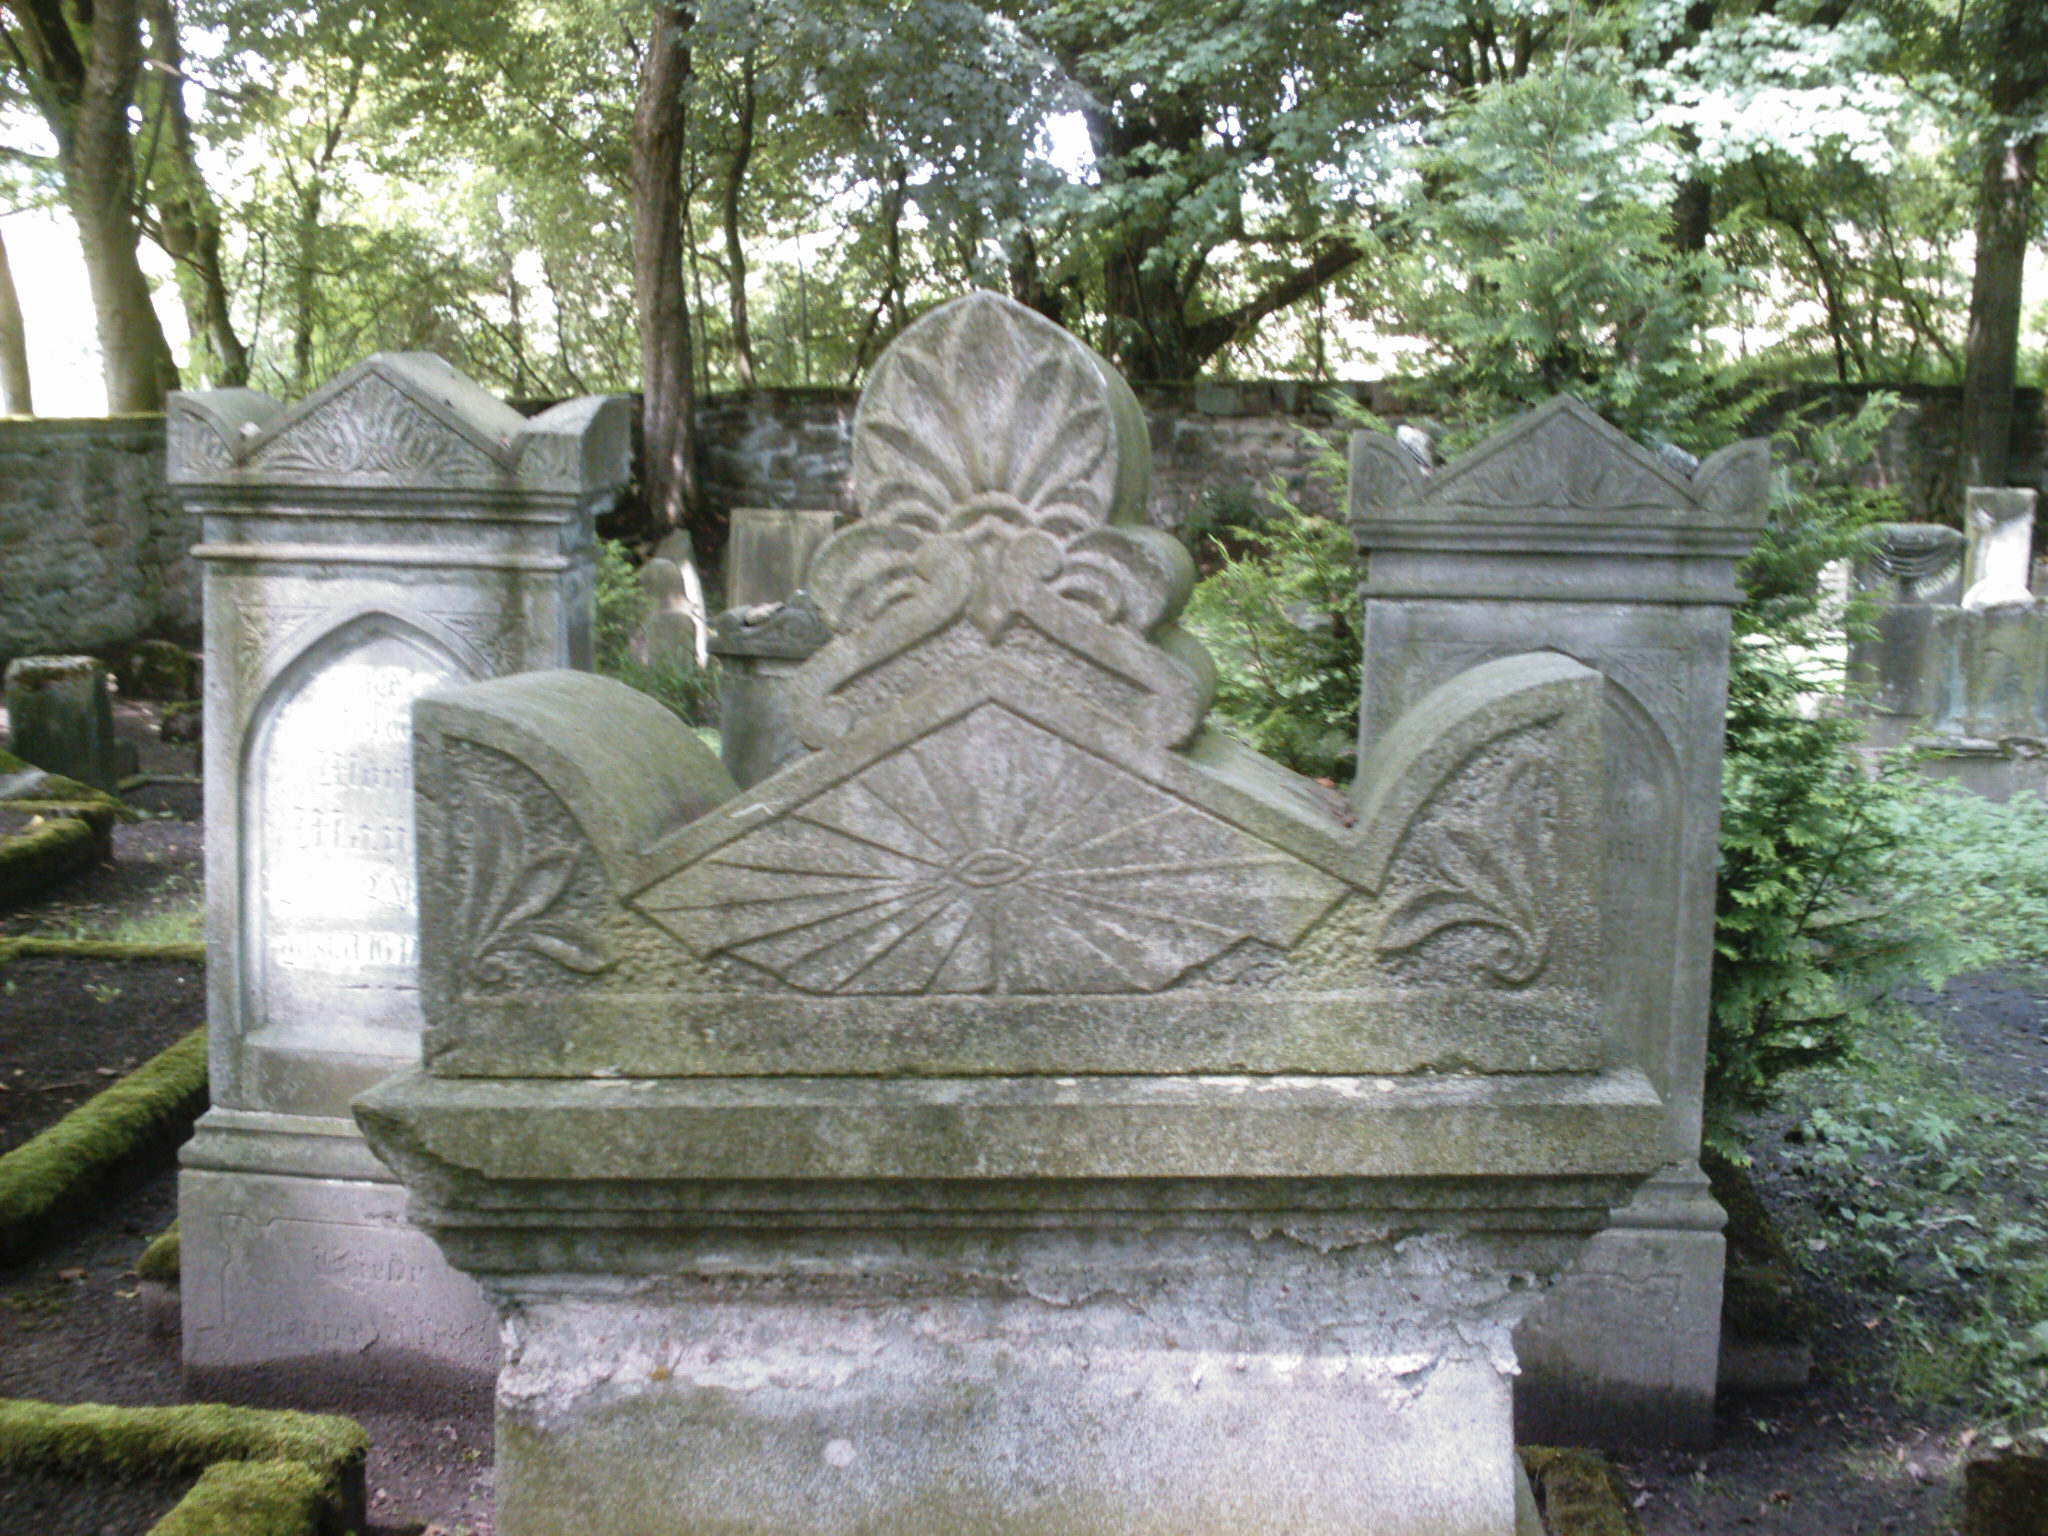 Ein Grabstein auf dem juedischen Friedhof in Schleusingen